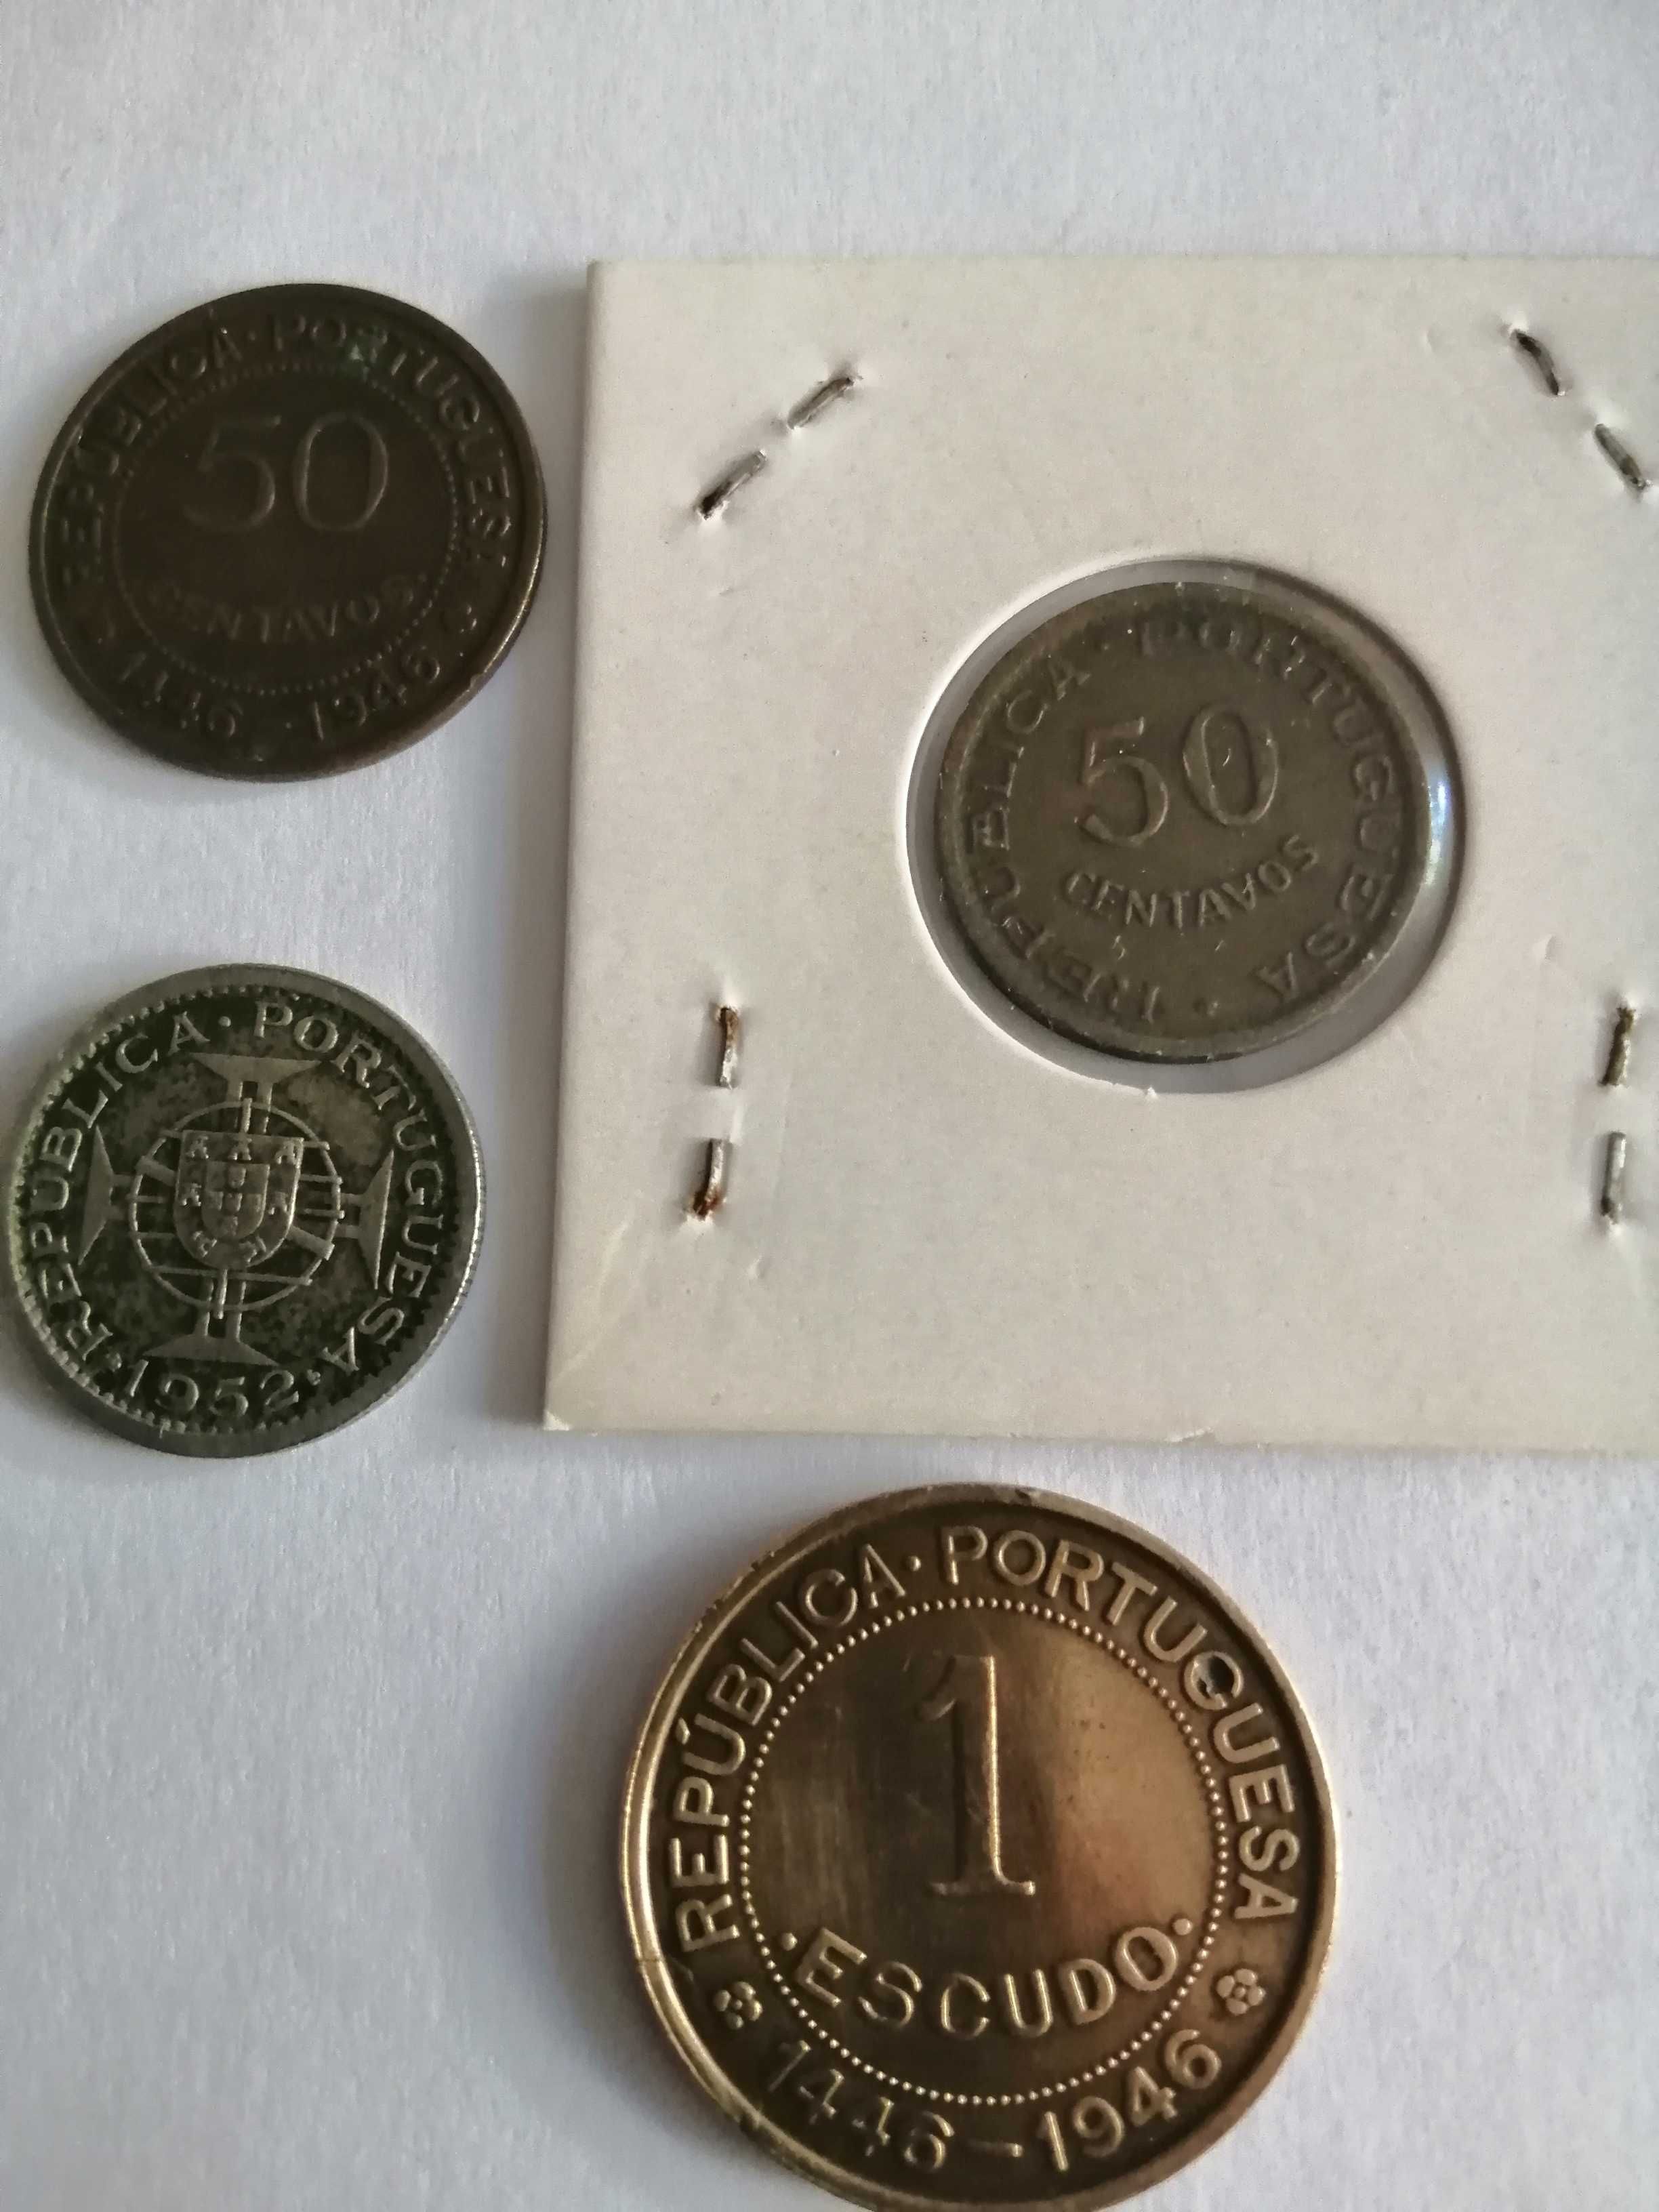 Moedas da Guiné, 50 centavos de 1 escudo e de 2,50 escudos